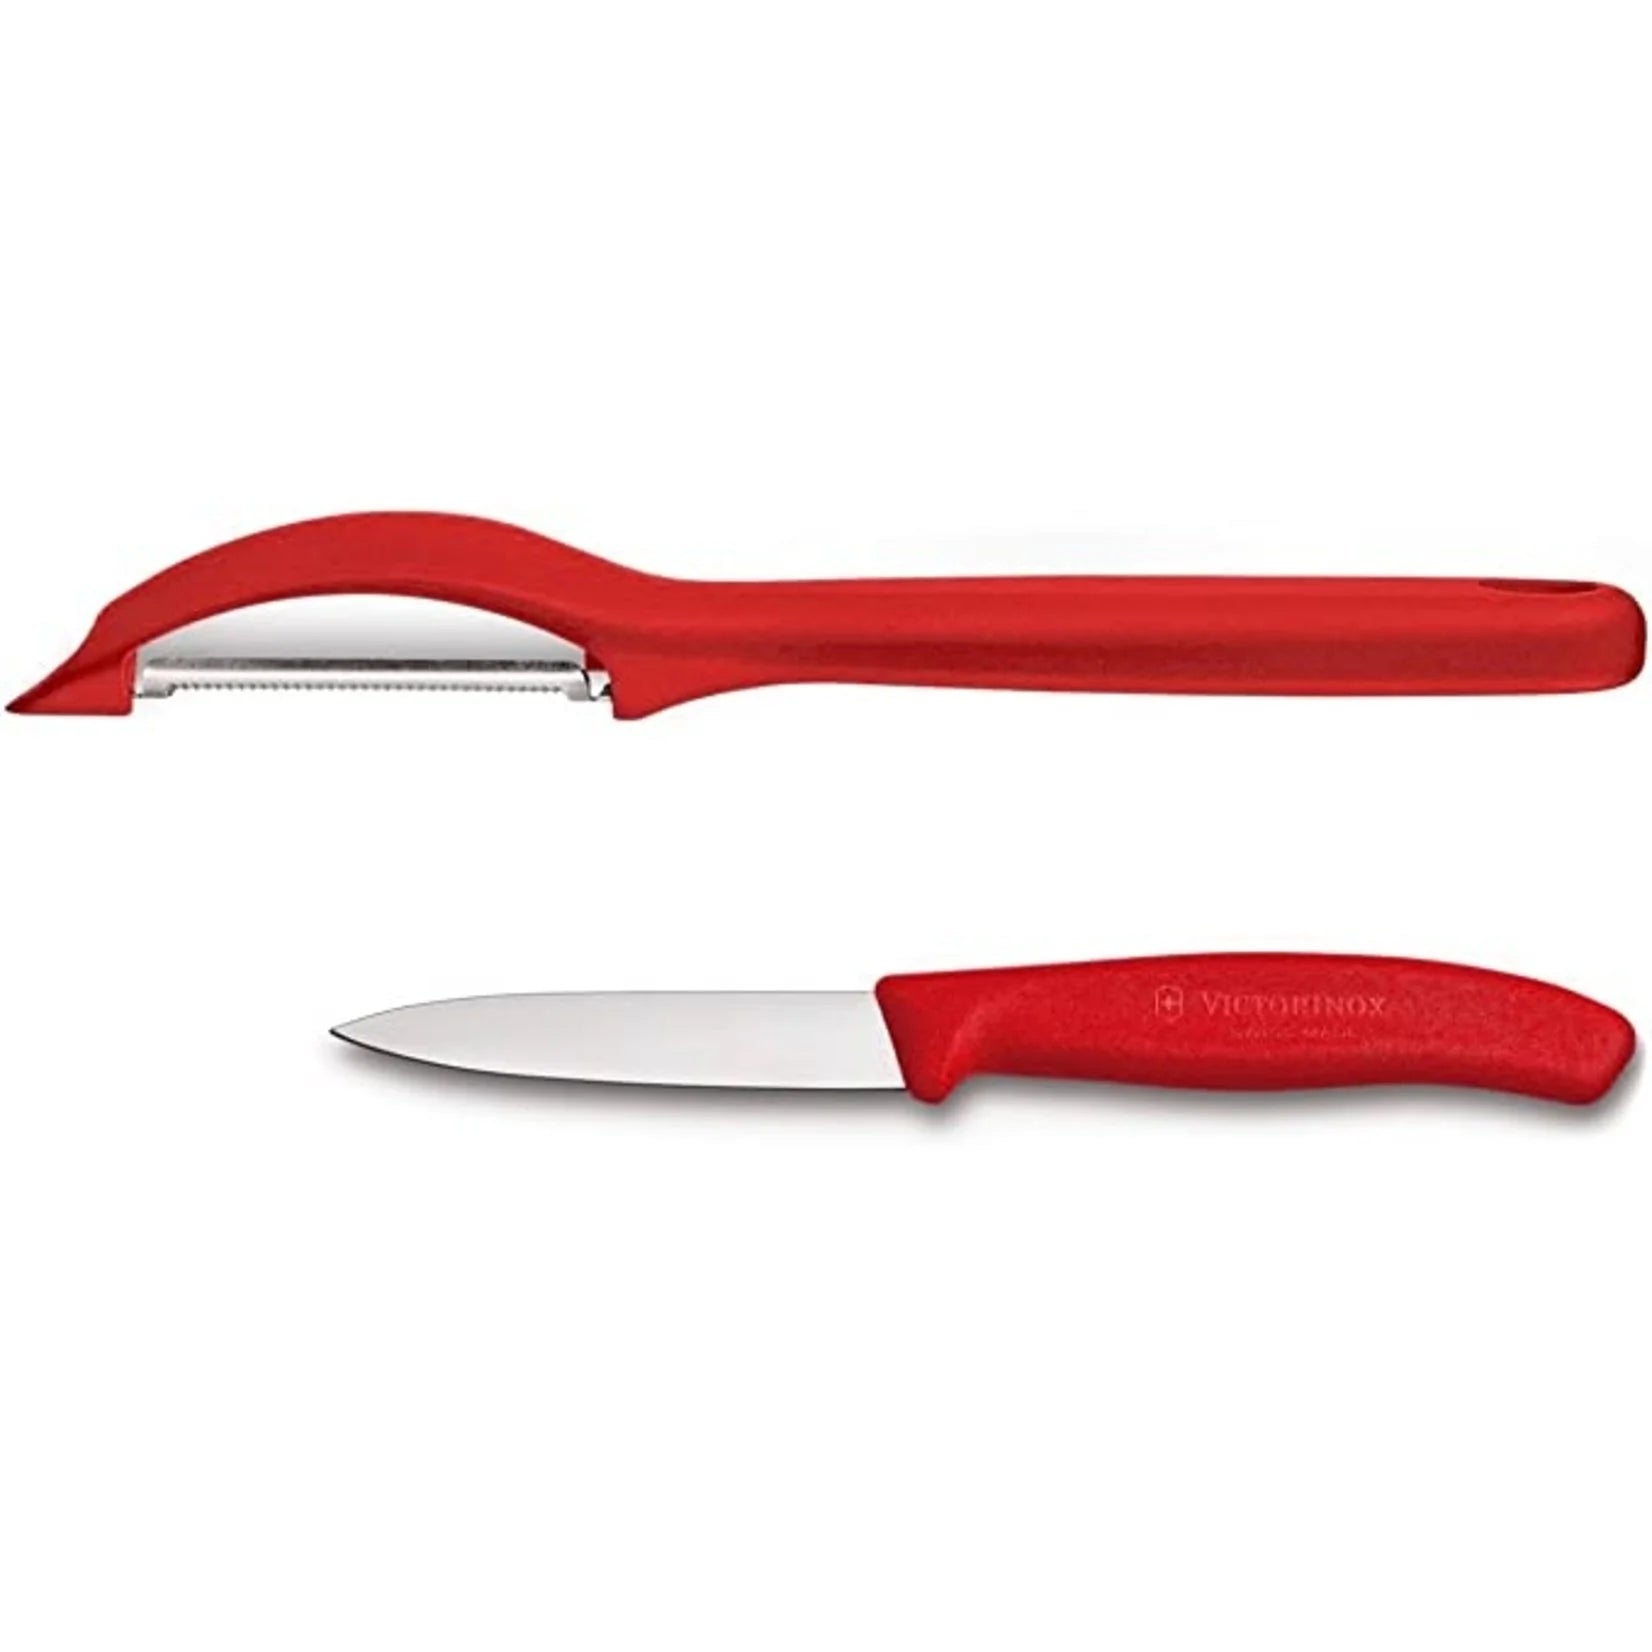 Duo Économe à lame dentelée et Couteau d'office 8cm-3.25''    - Victorinox - Eplucheur et couteau d'office - 